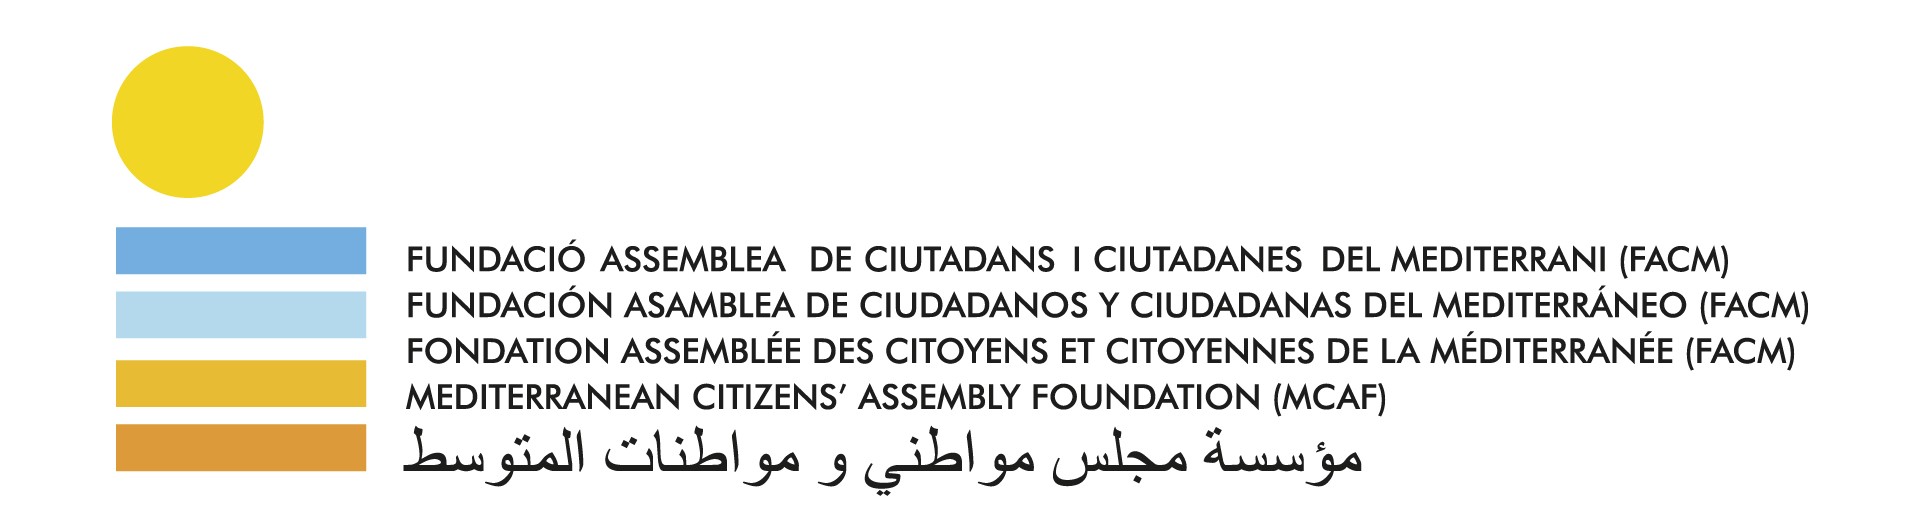 Fondation Assemblée des Citoyens et Citoyennes de la Méditerranée (FACM) logo